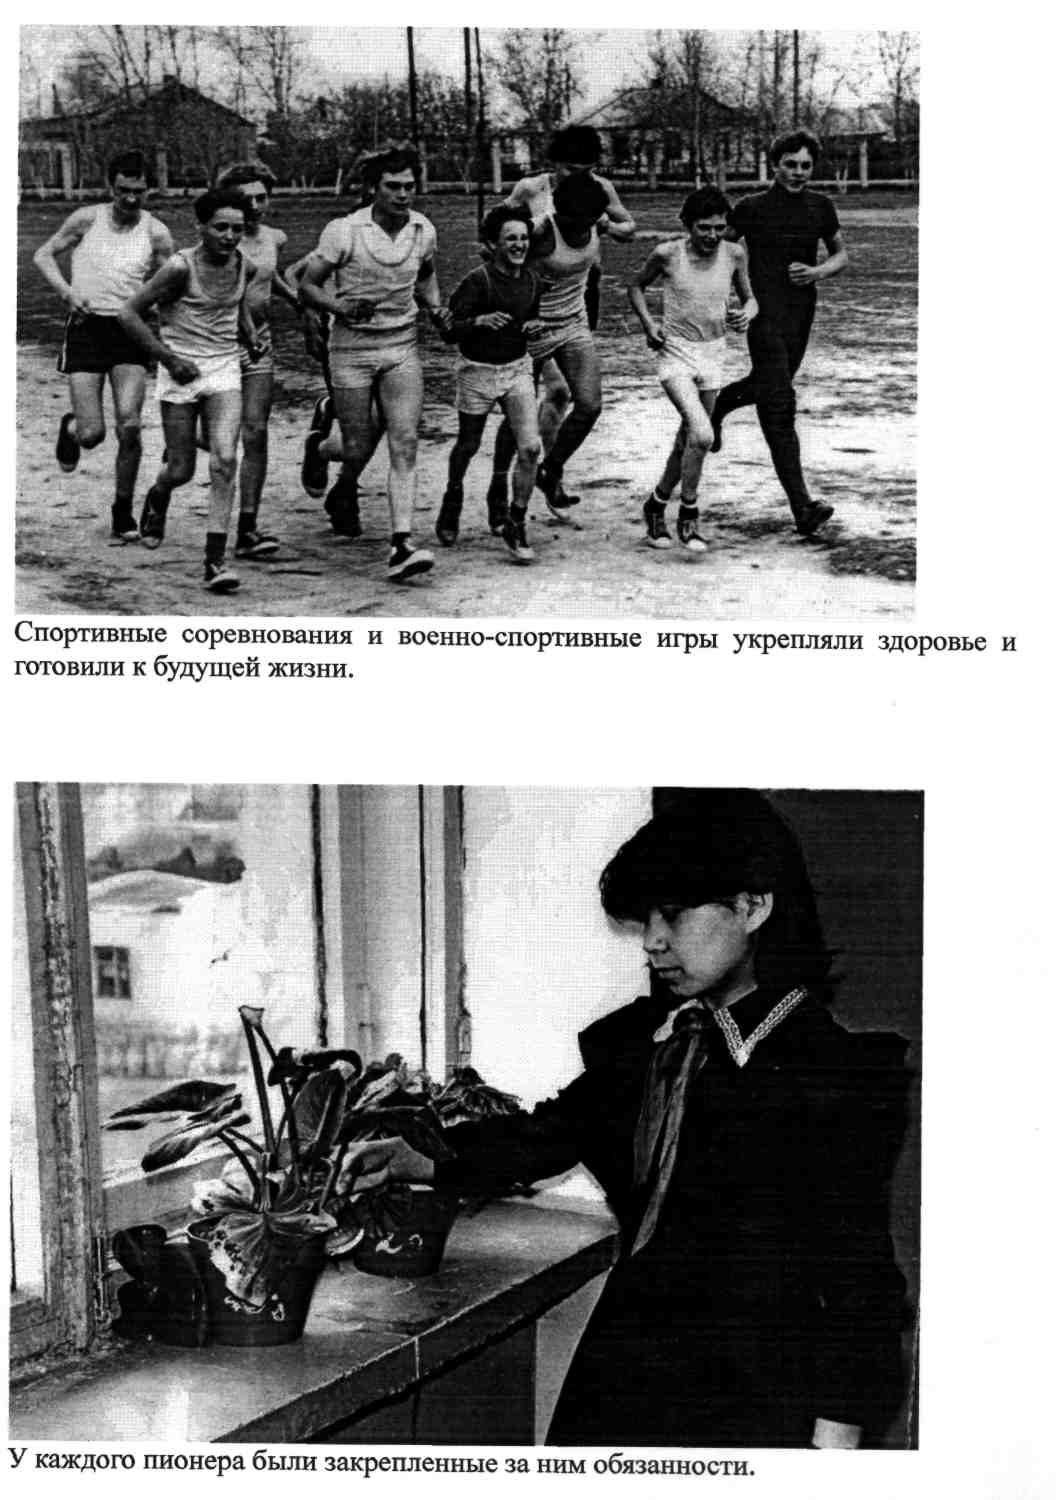 Развитие детского движения в Успенском районе Павлодарской области в 60-70 гг. ХХ века